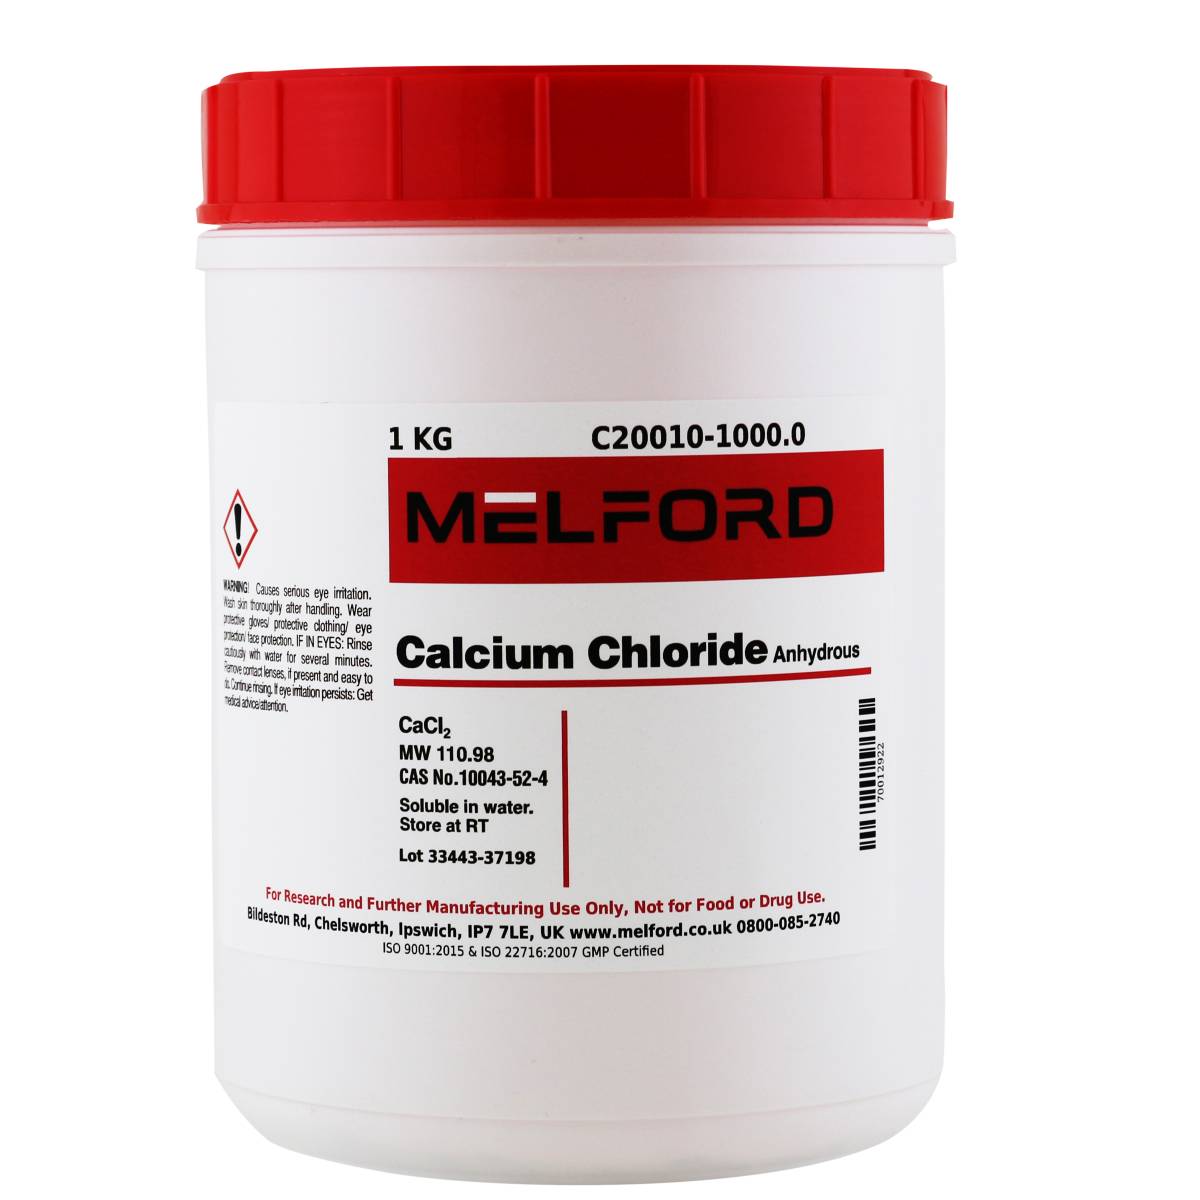 Calcium Chloride Anhydrous, 1 Kilogram